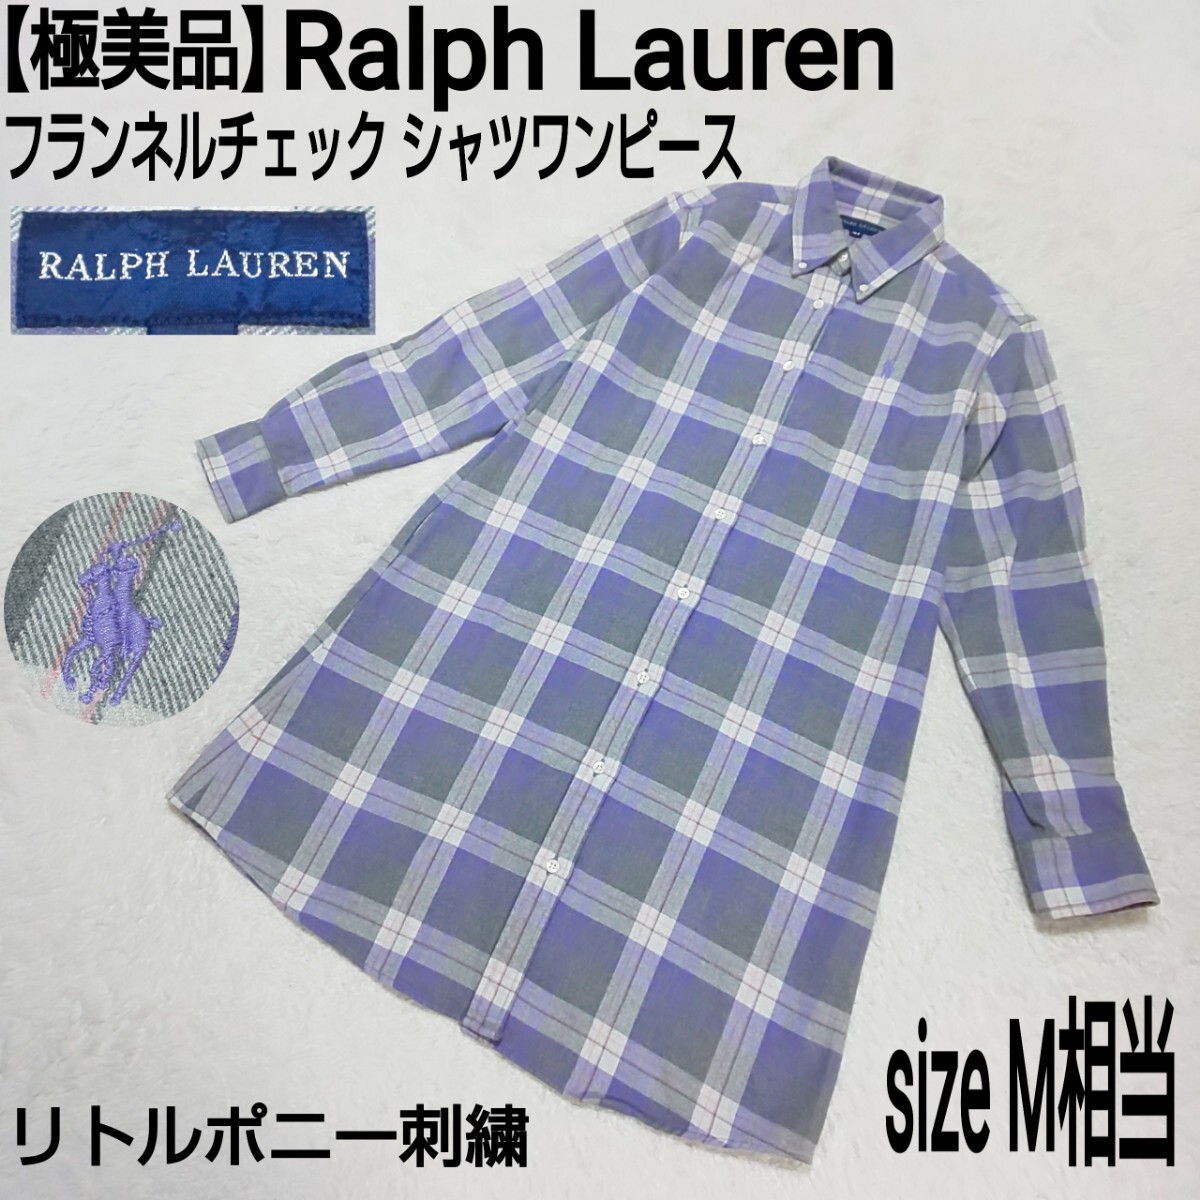 【極美品】Ralph Lauren ラルフローレン フランネルチェック シャツワンピース リトルポニー刺繍 パープル×グレー レディース 160/M相当